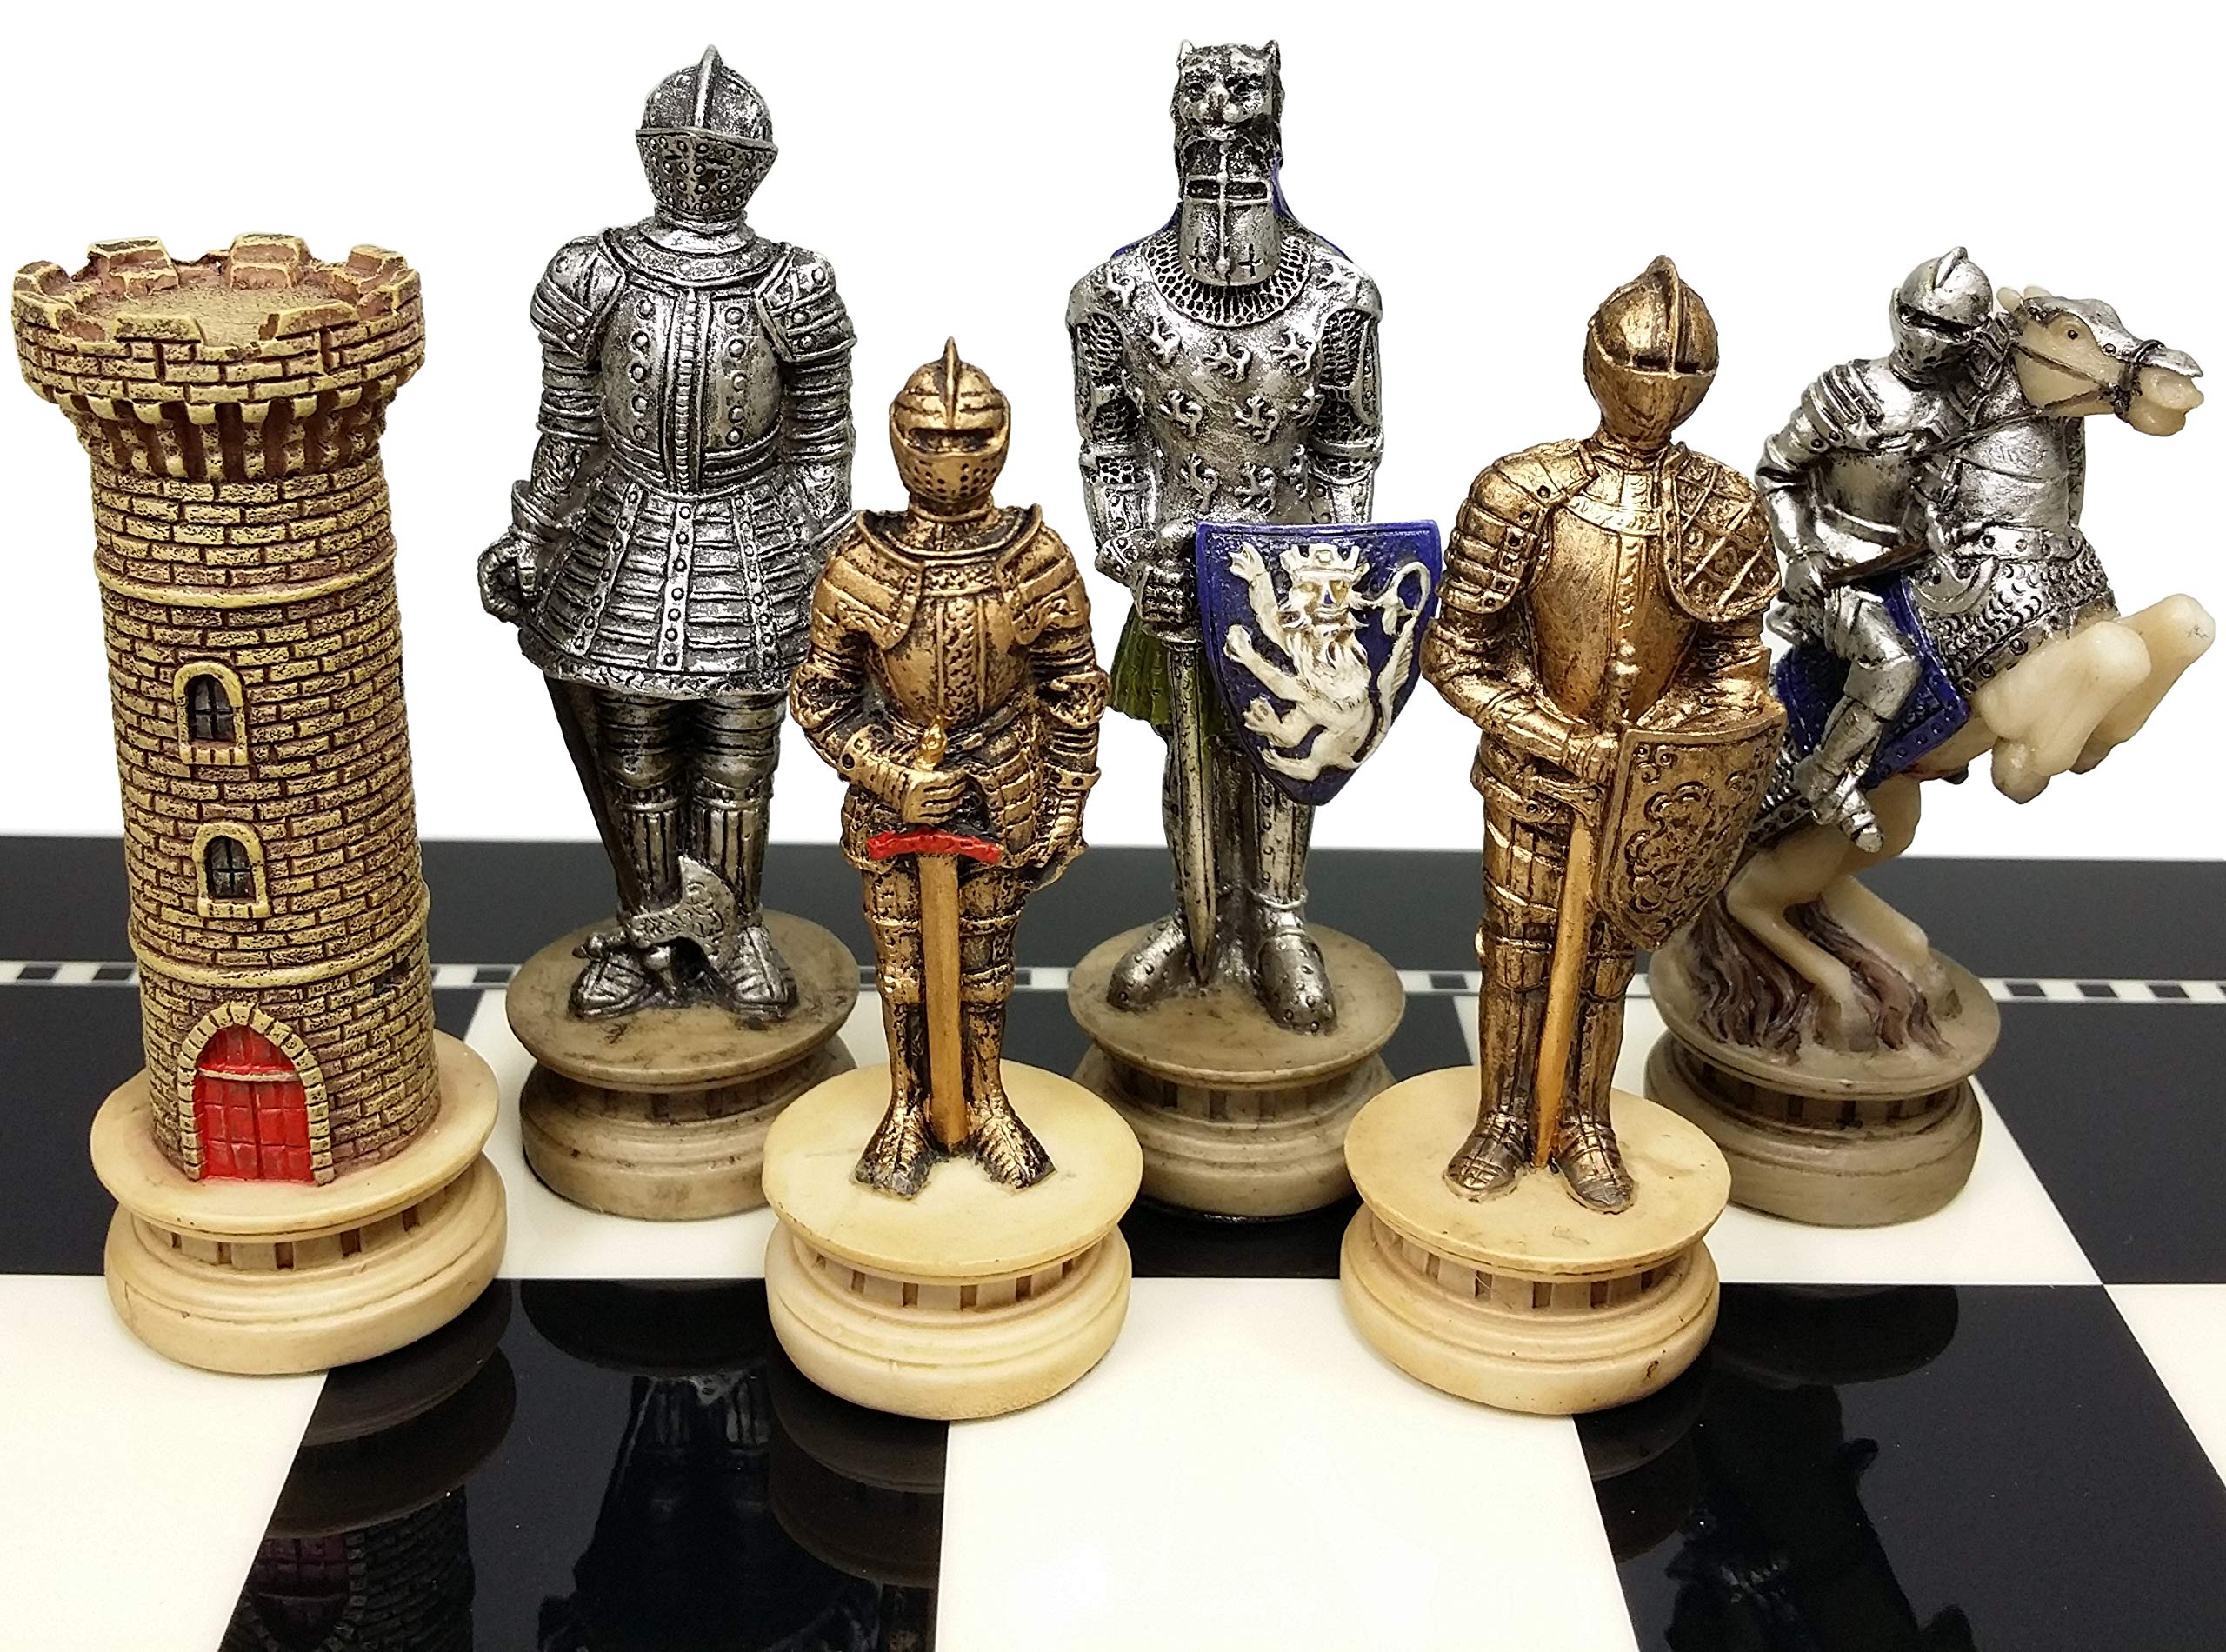 チェスセット HPL Medieval Times Crusades Gold and Silver Armored Warrior Knight Chess Men Set - NO Board 